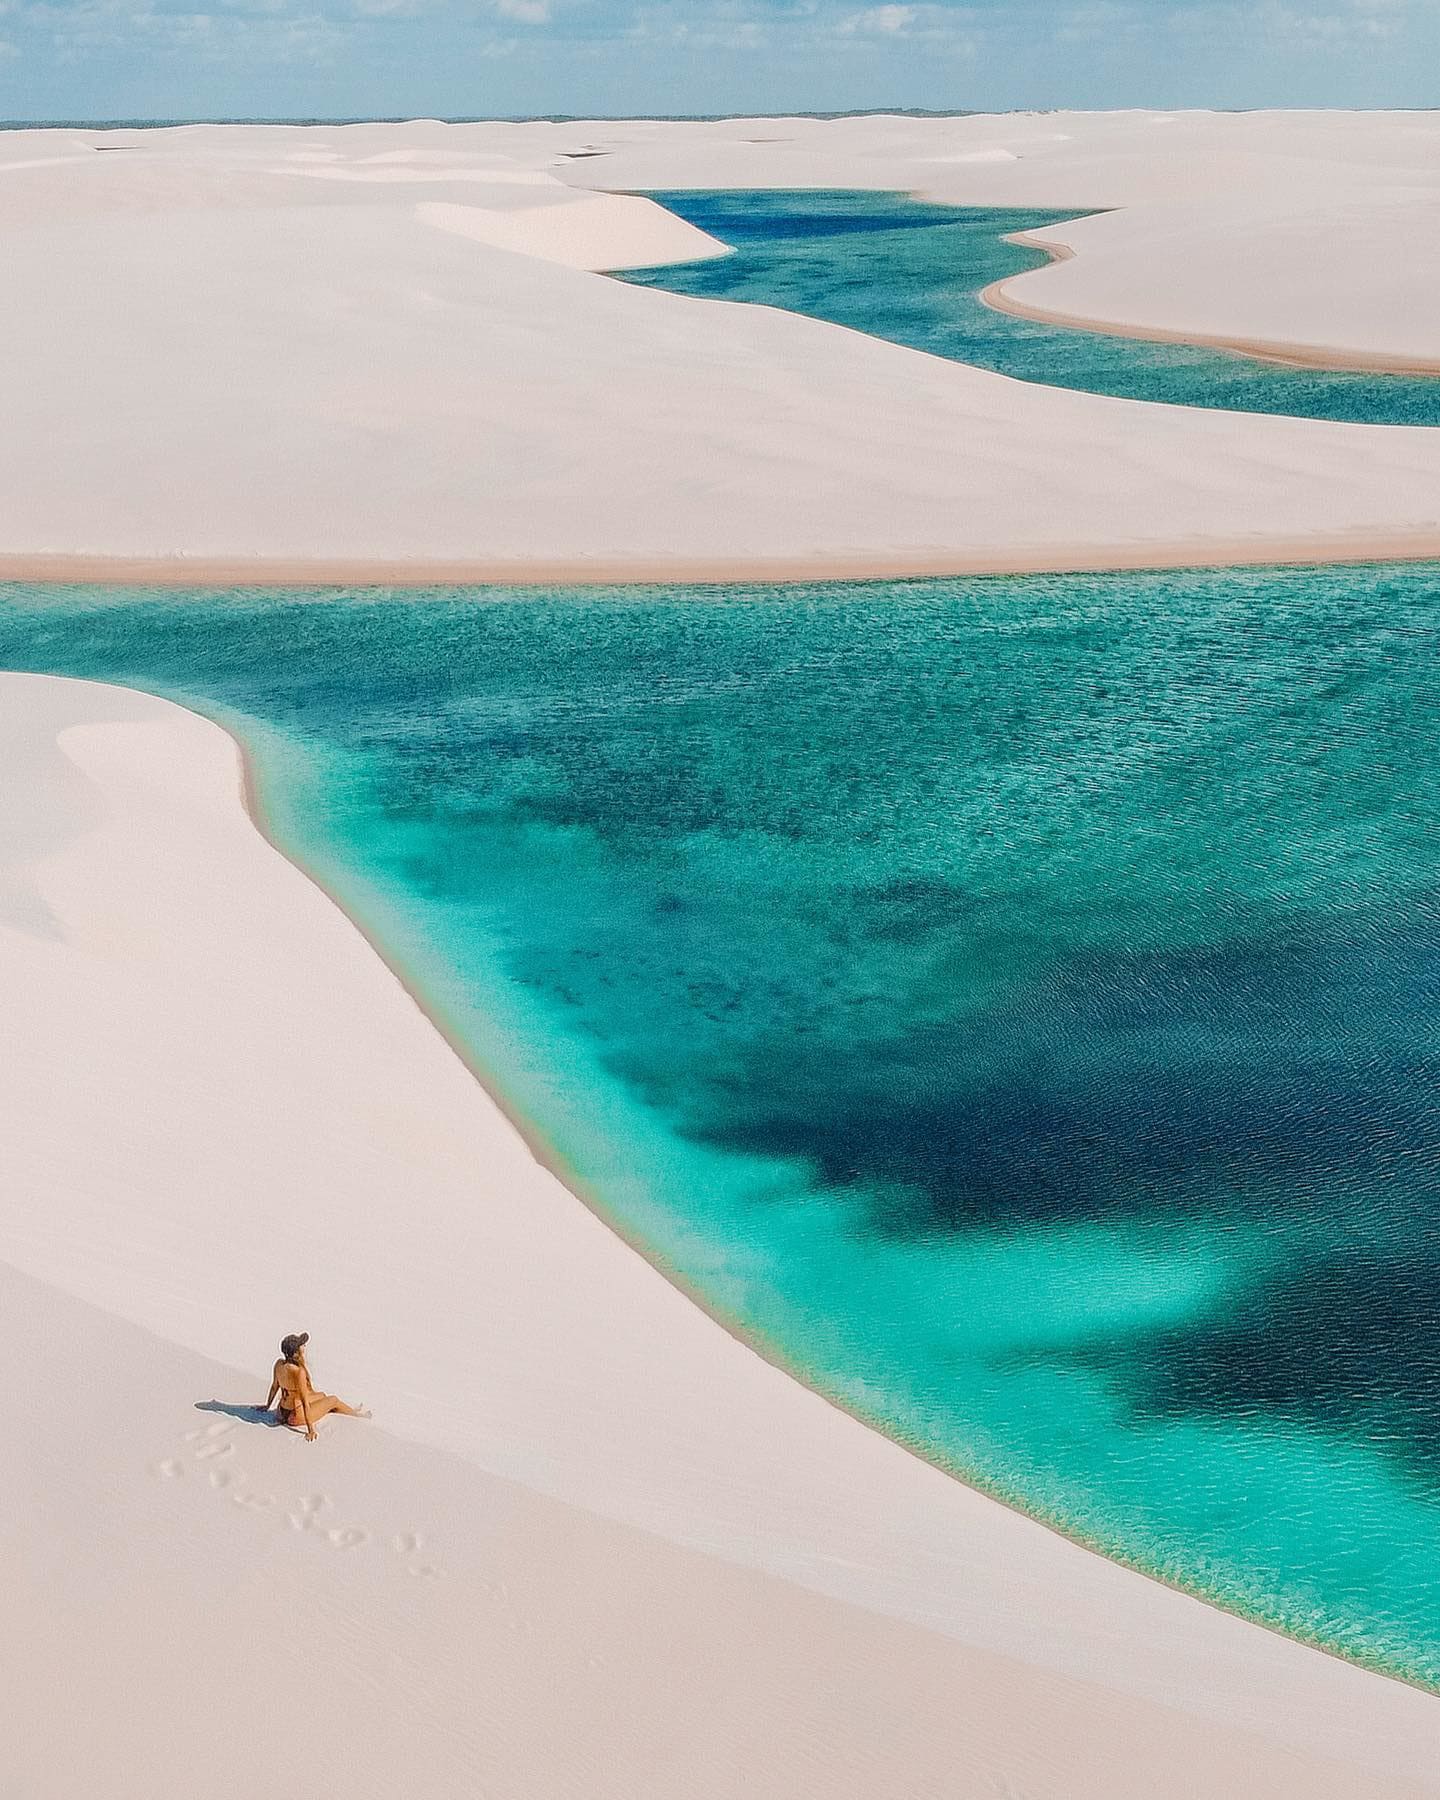 Desert blue translucent lagoon - Lencois Maranheses 